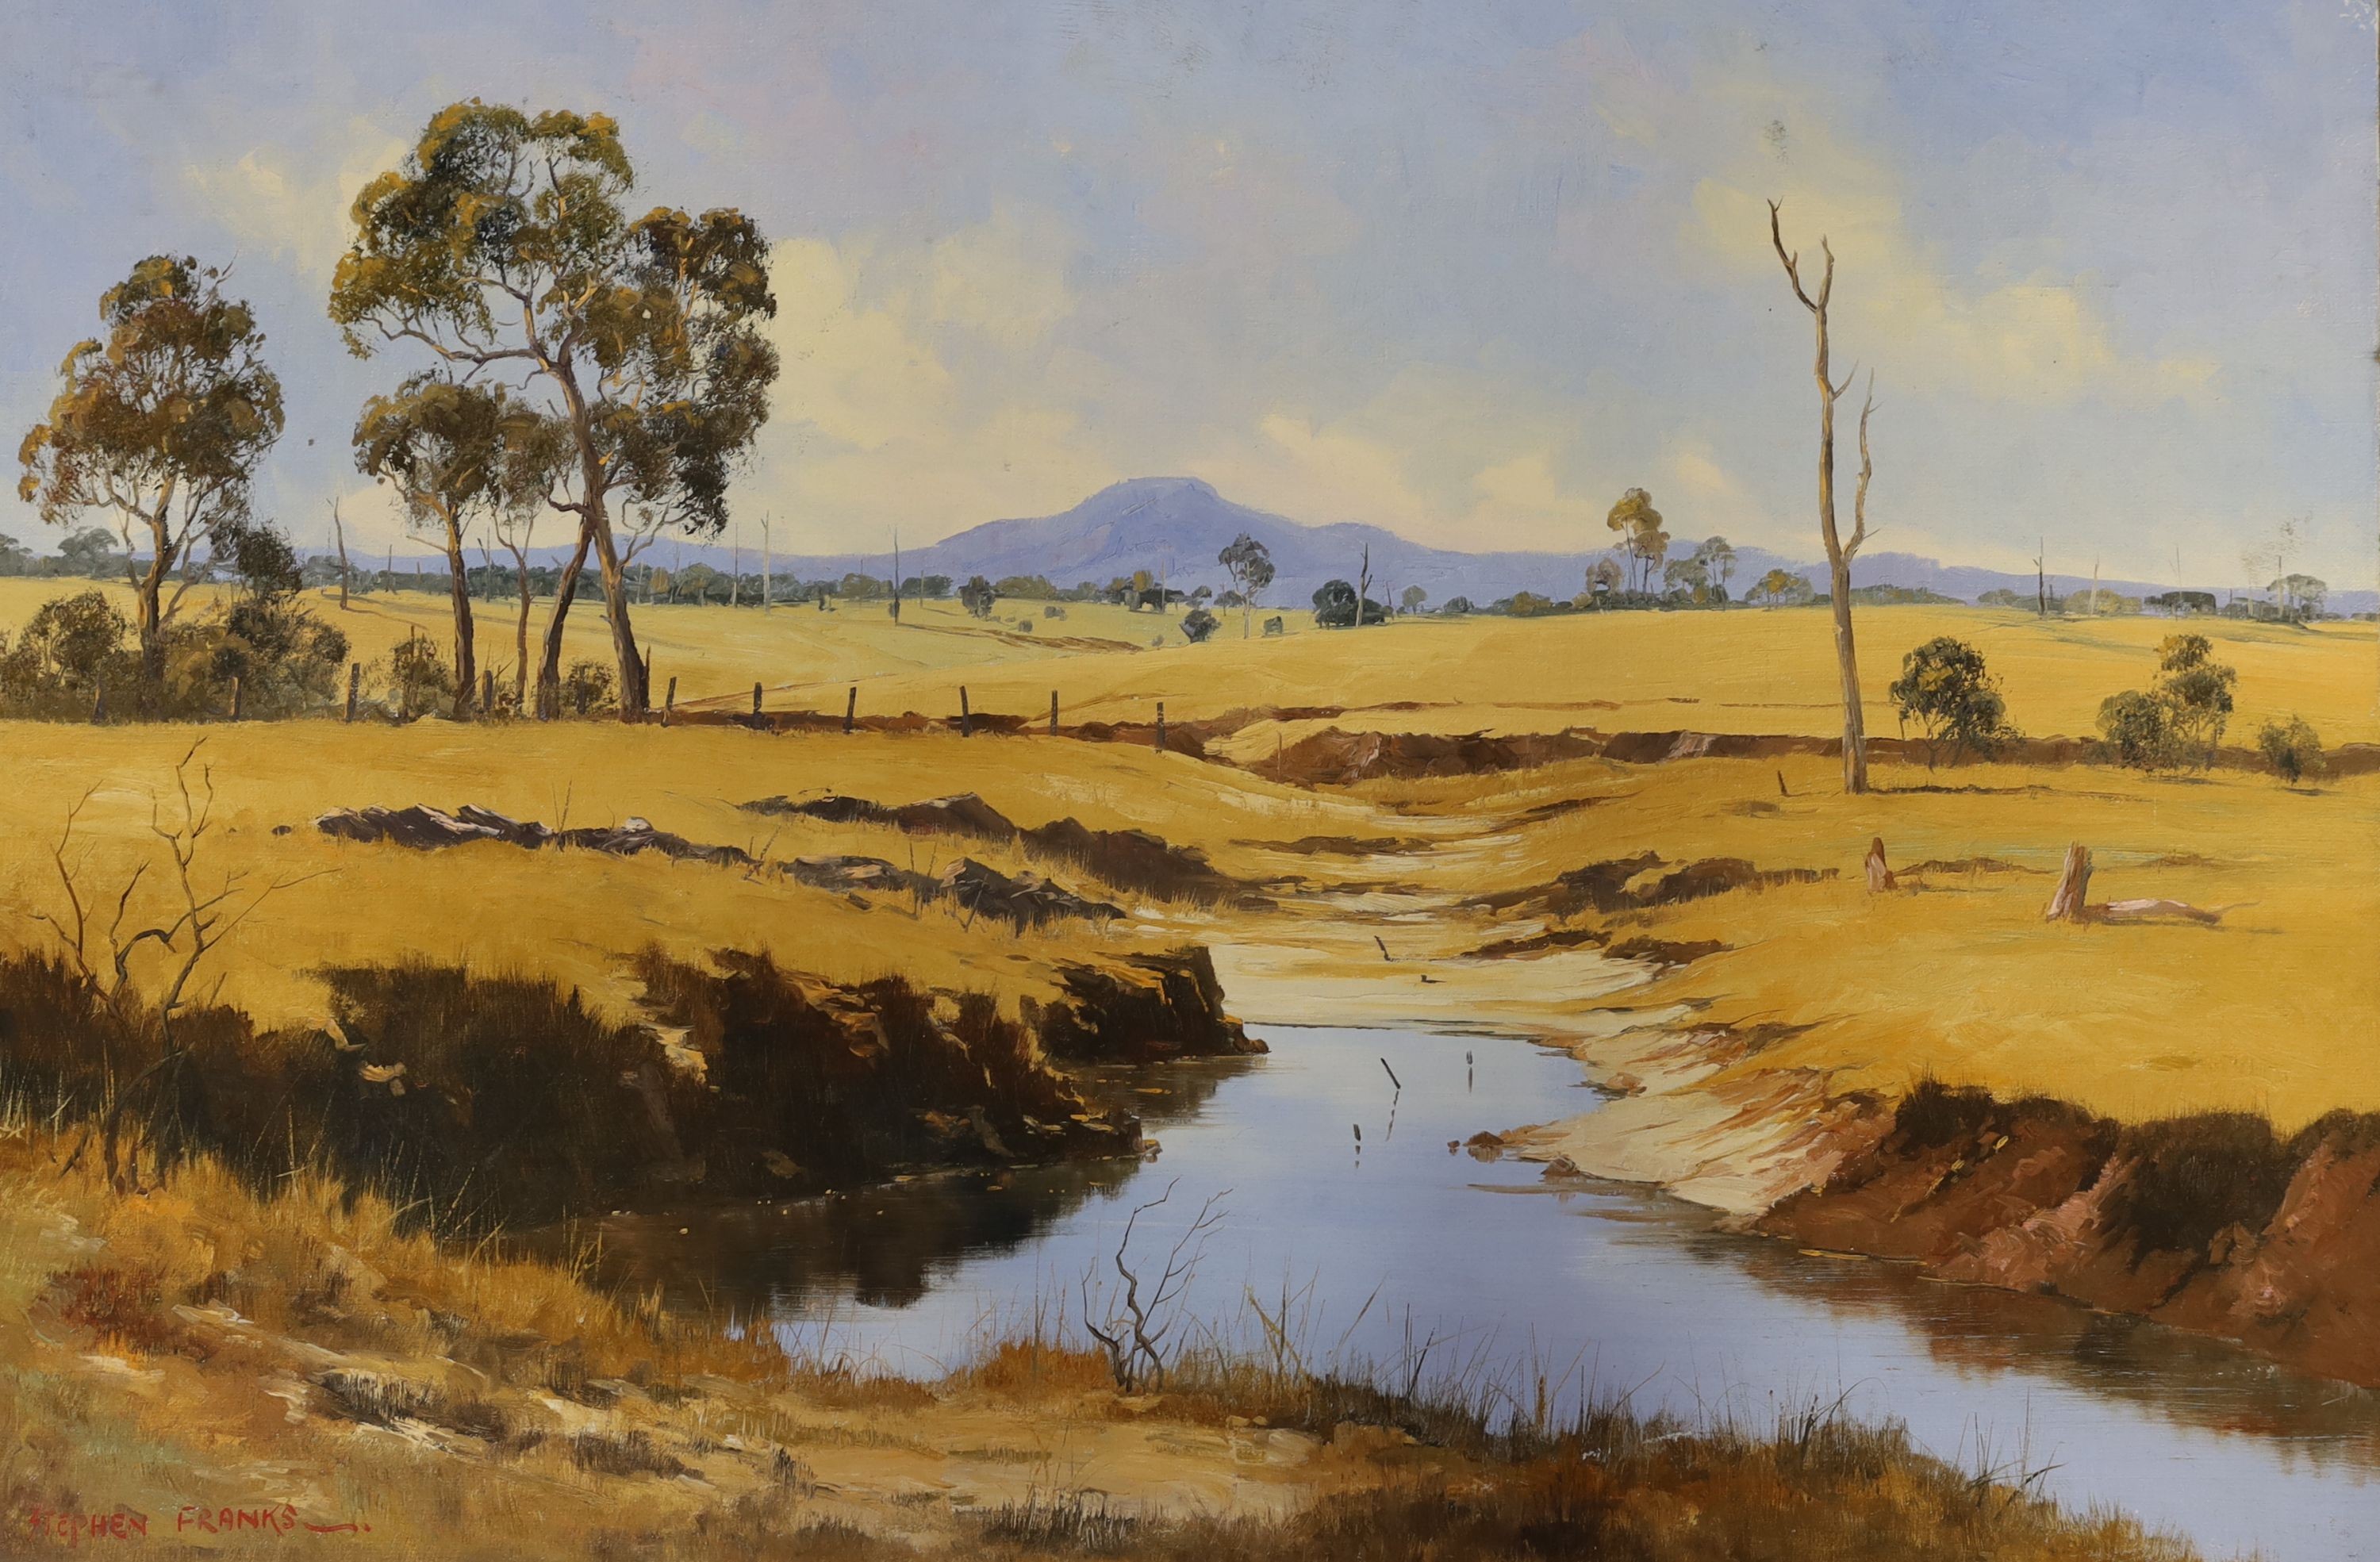 Stephen Franks (1942-2002), oil on board, South African landscape, signed, 61 x 91cm, unframed